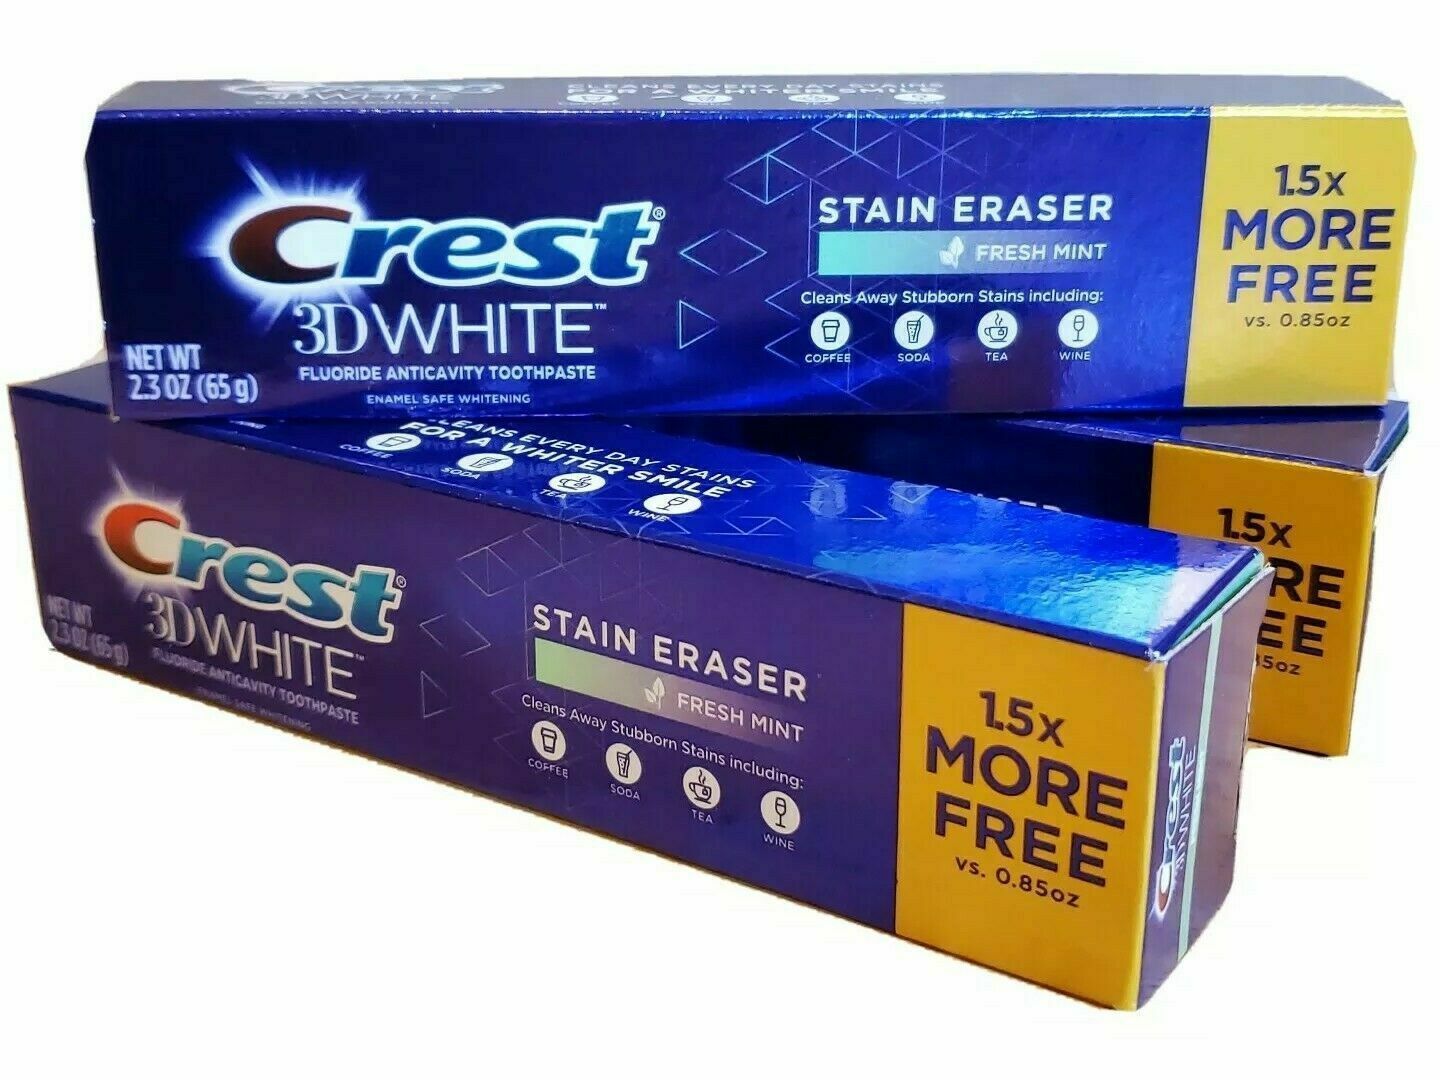 (x3) Crest 3D White Stain Eraser Whitening Toothpaste Fresh Mint 2.3oz Each